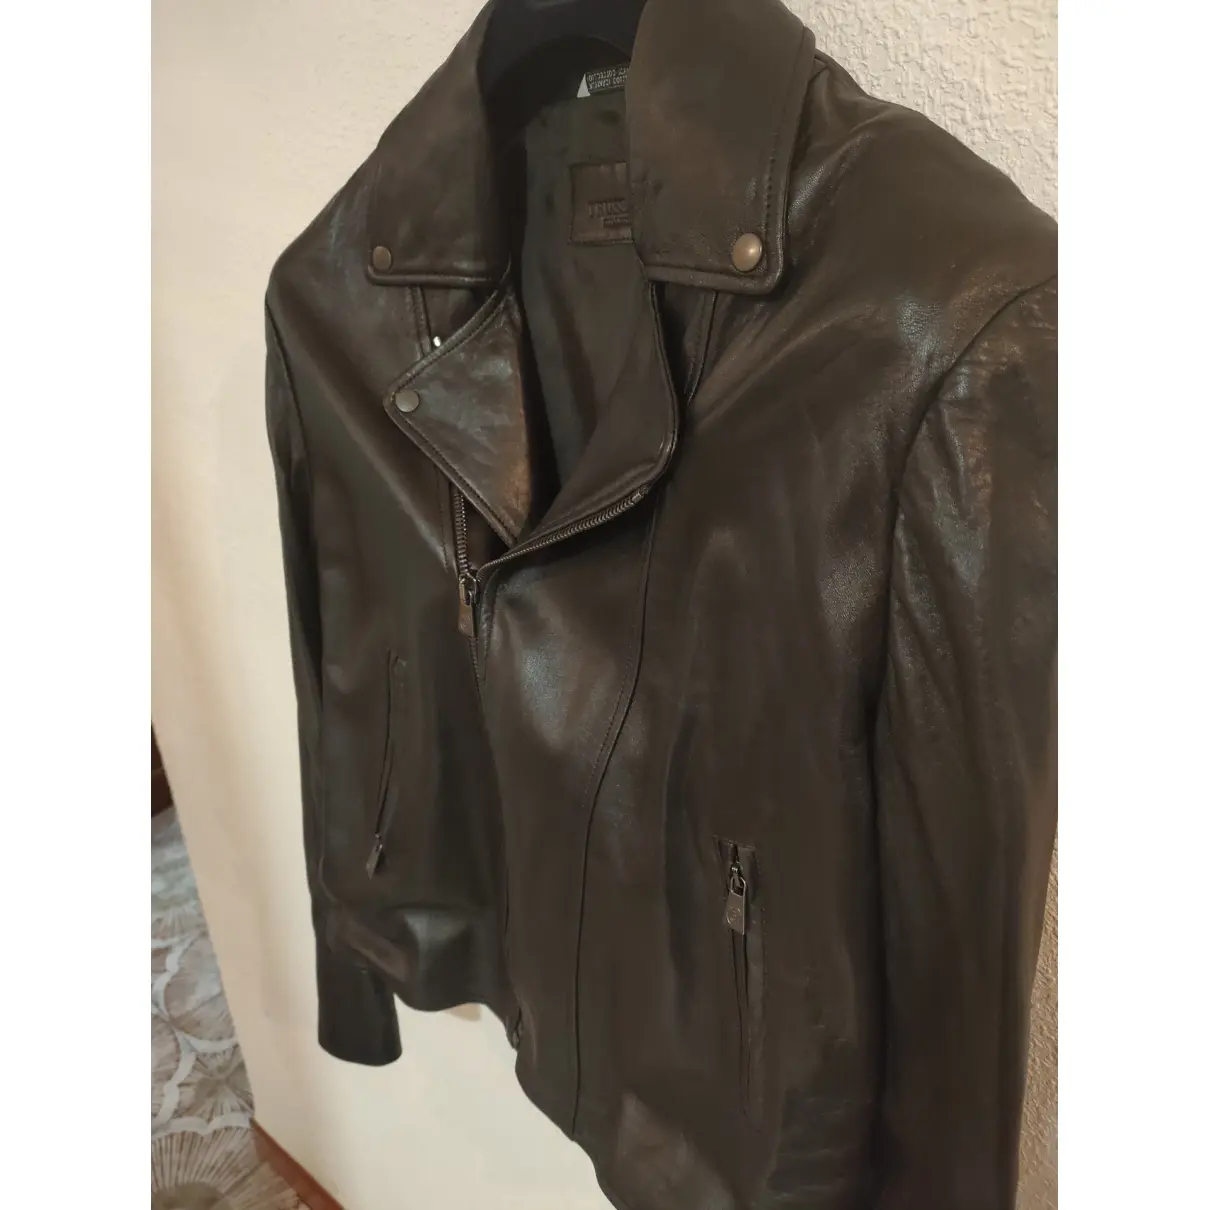 Leather jacket Trussardi